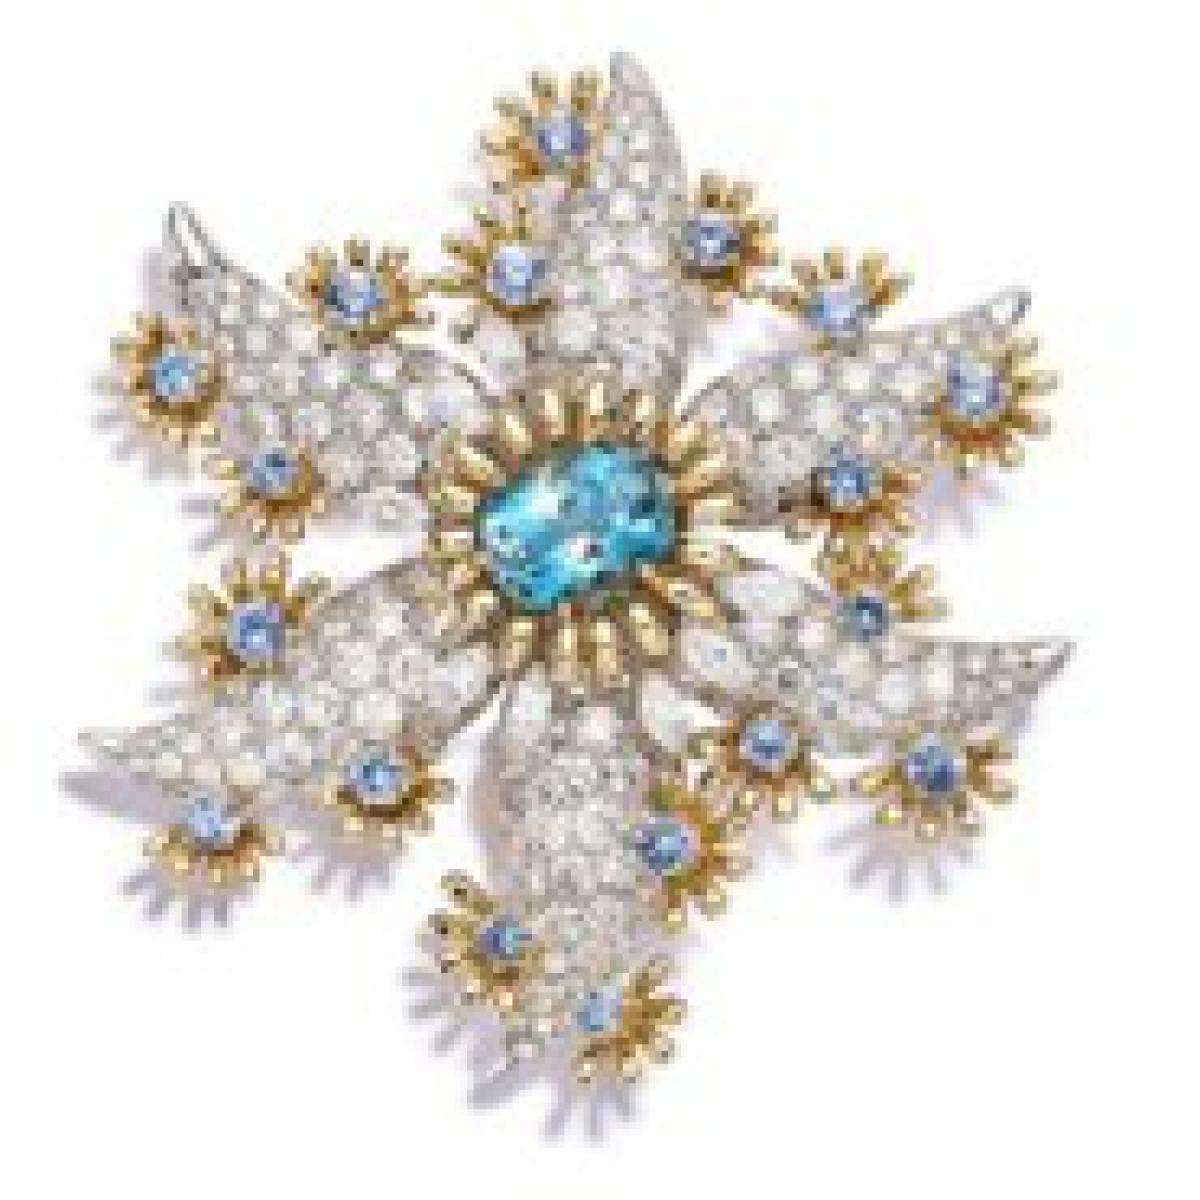 蒂芙尼史隆伯杰系列铂金及18K黄金镶嵌海蓝宝石及钻石海星胸针胸针